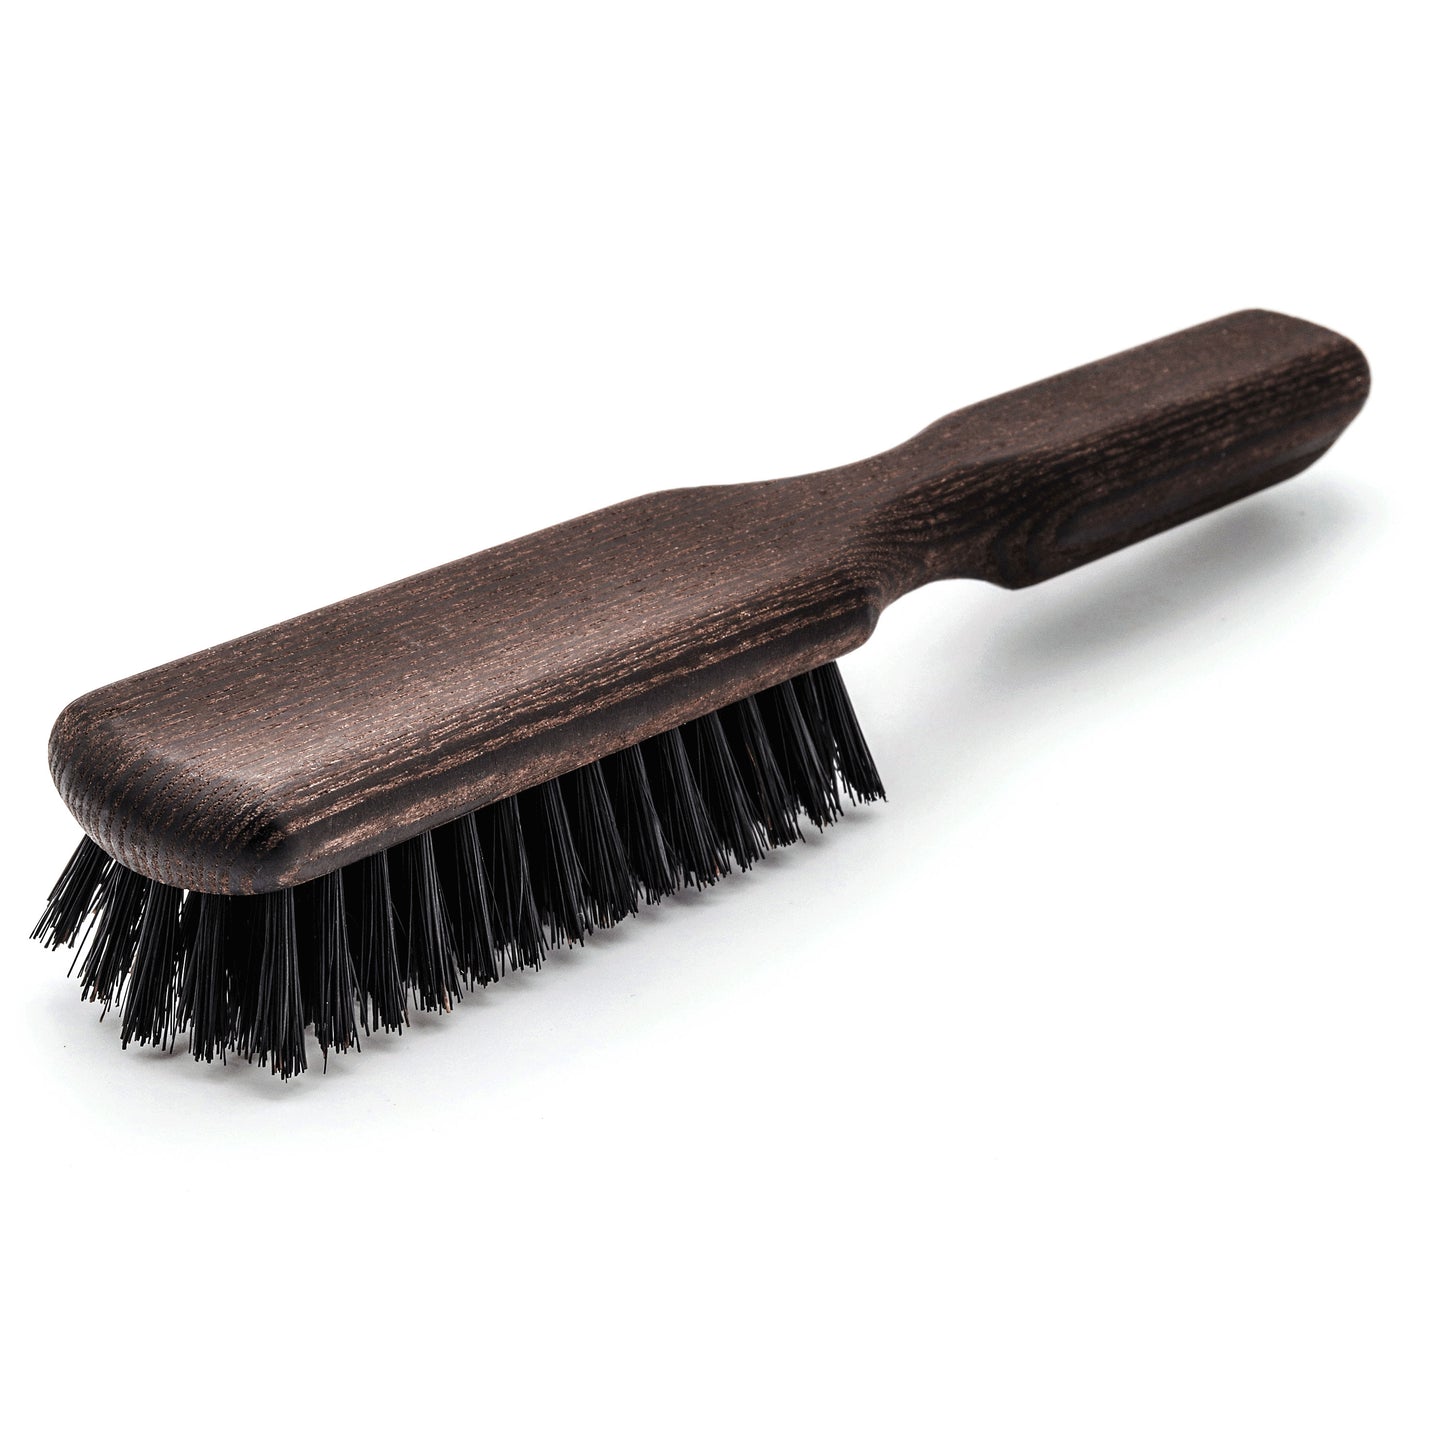 Haar- und Bartbürste für Männer - Bürste mit Wildschweinborsten